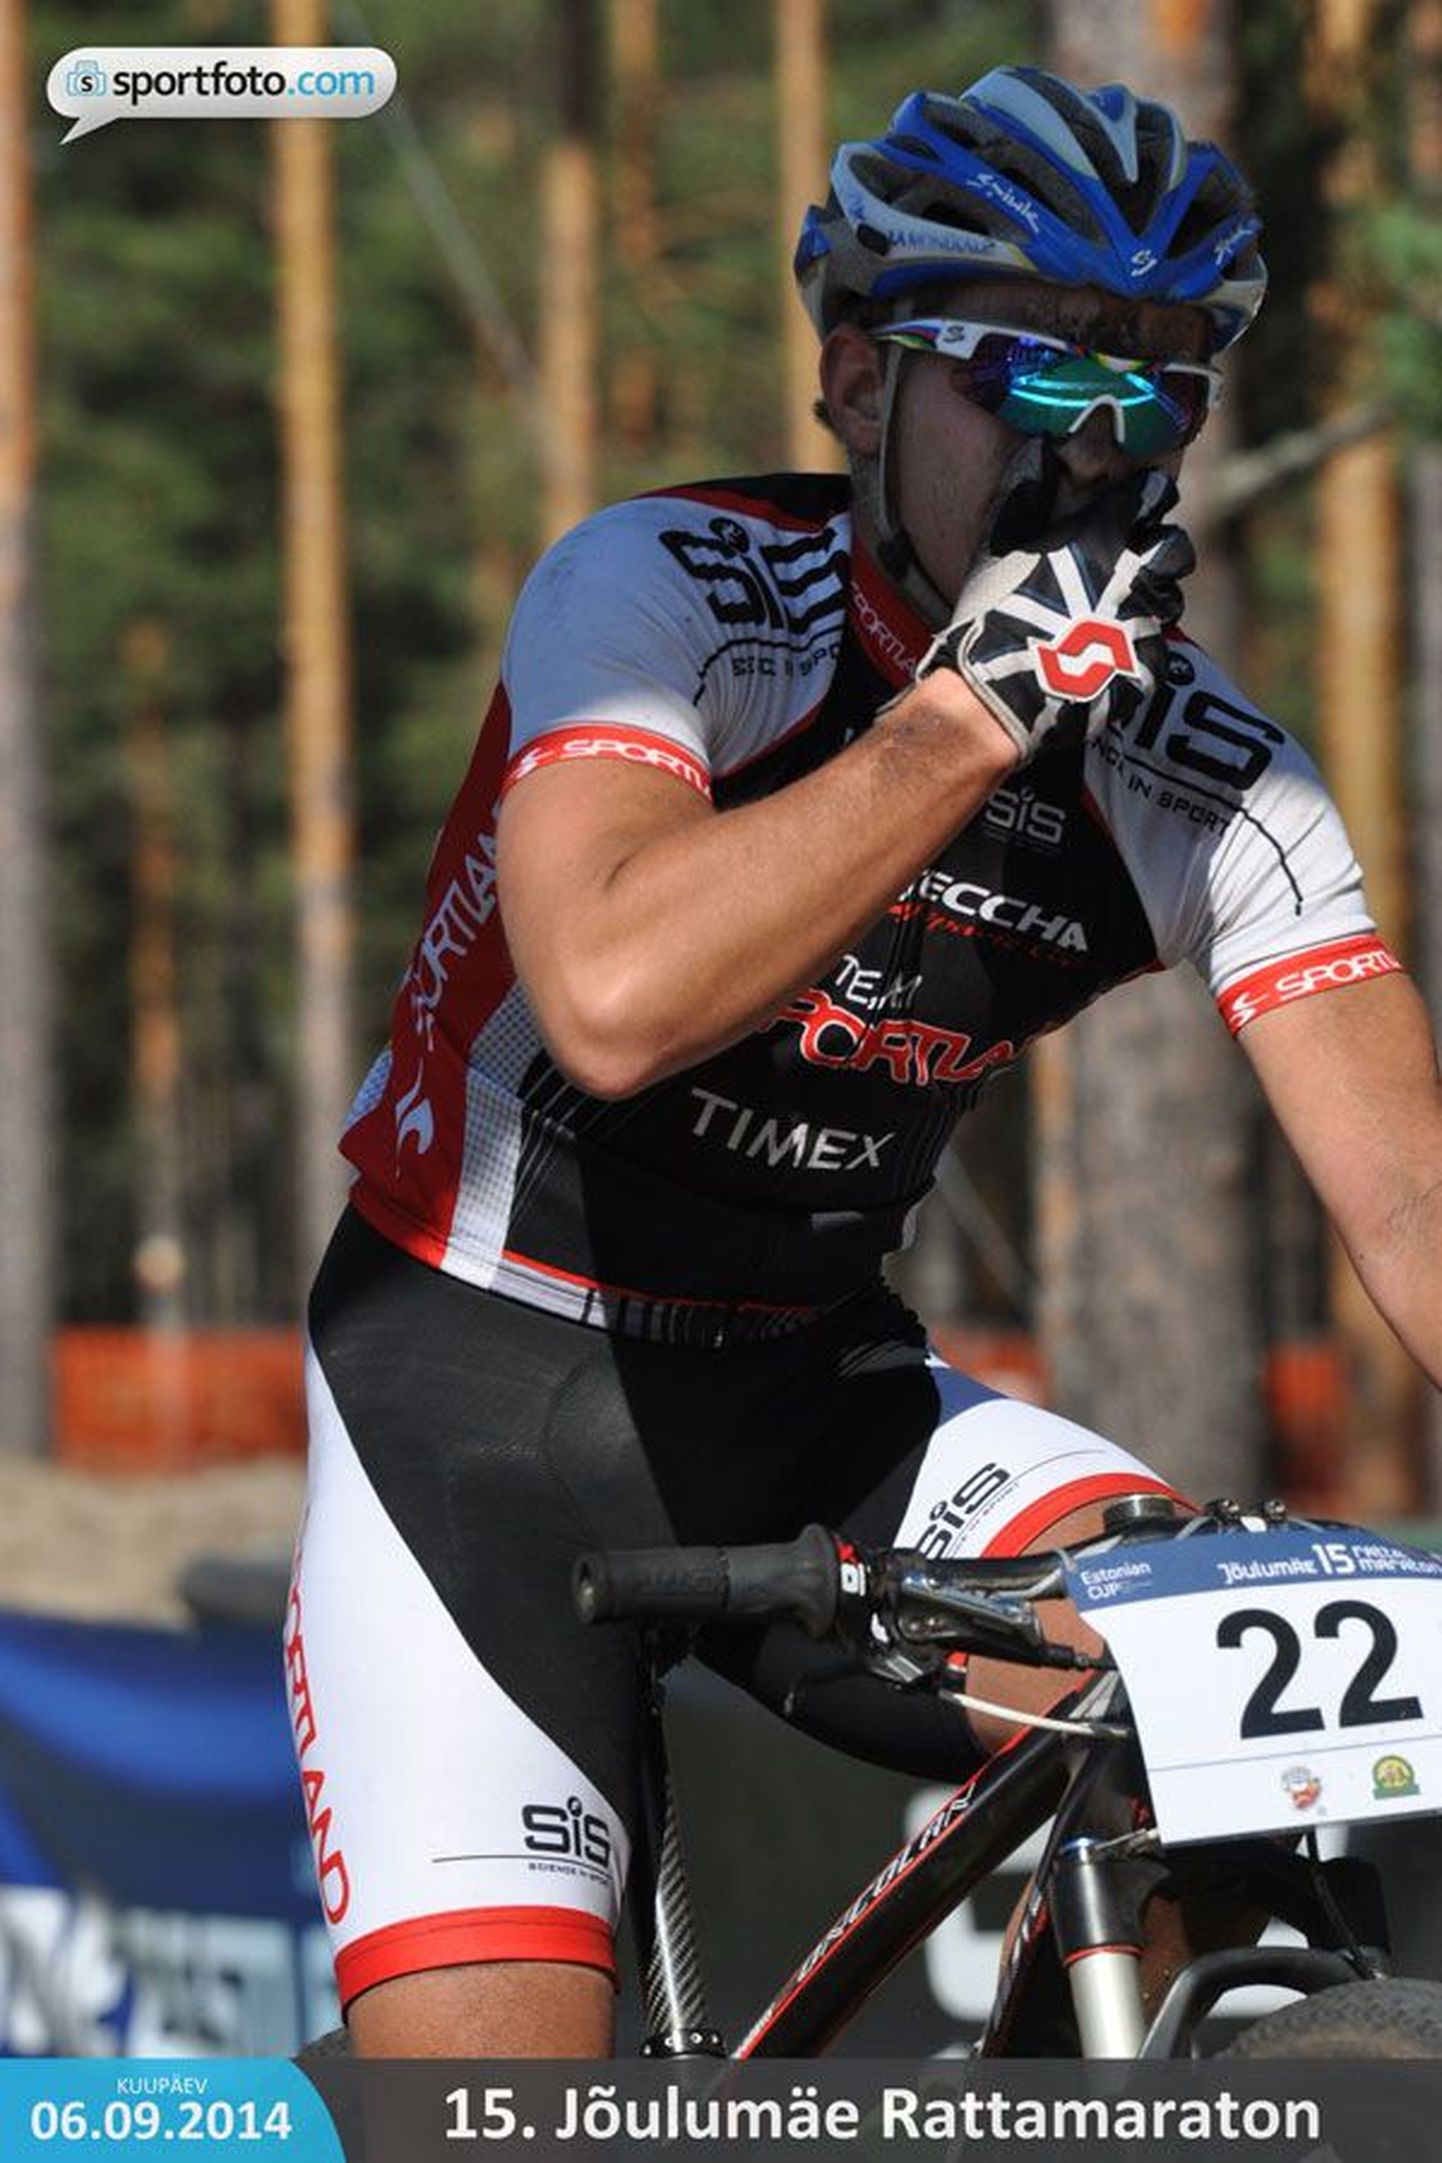 Срочнослужащий Сил обороны велосипедист Стен Саарнитс должен будет покинуть спортивный взвод.